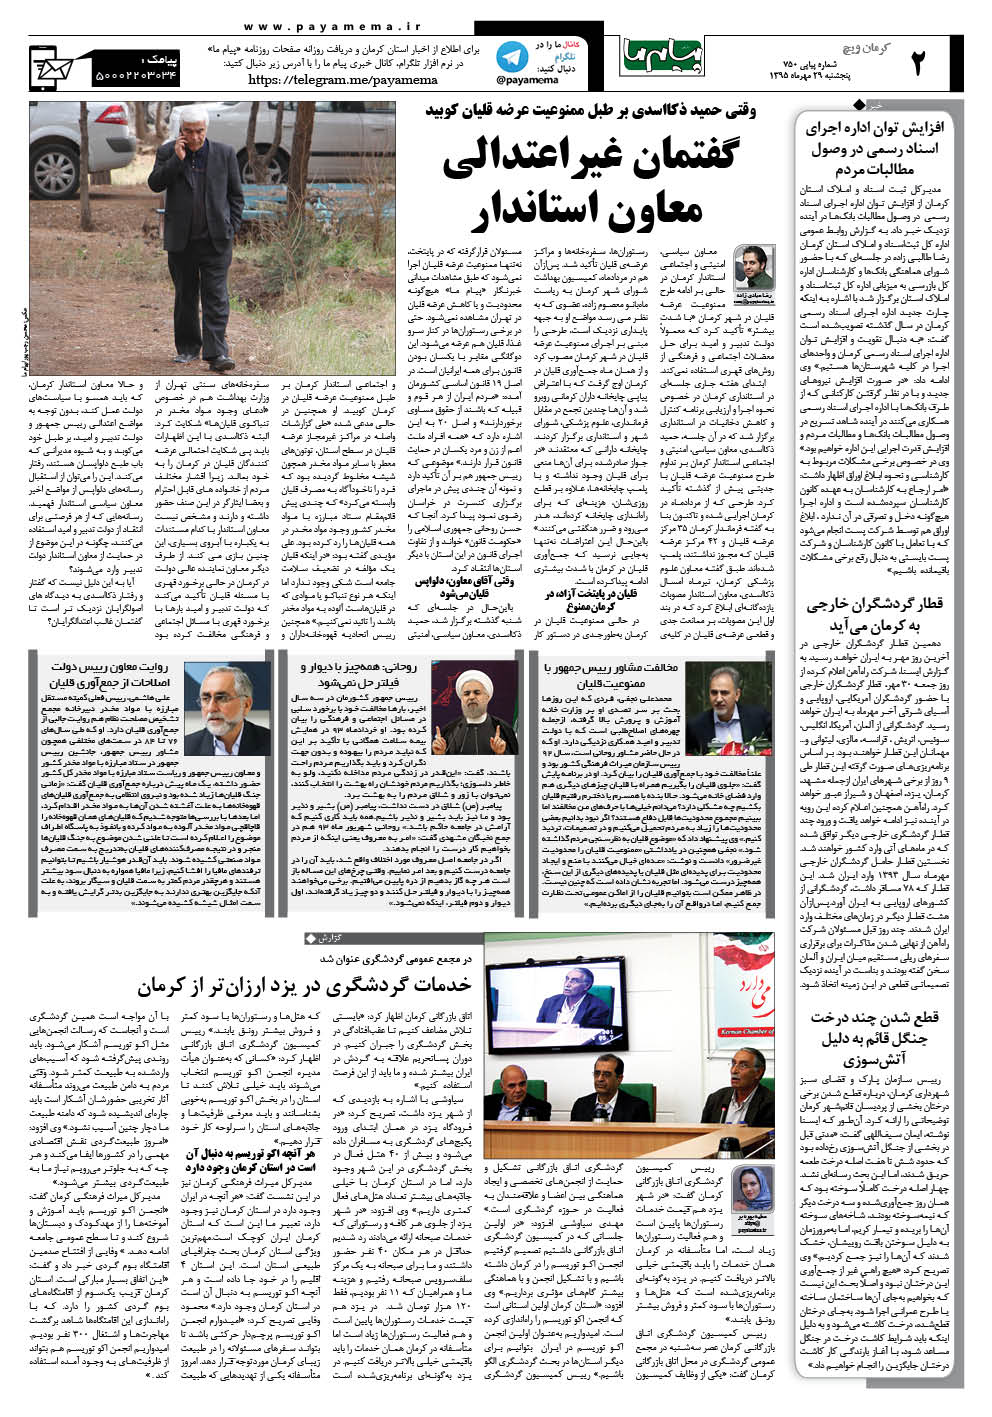 صفحه کرمان ویچ شماره 750 روزنامه پیام ما